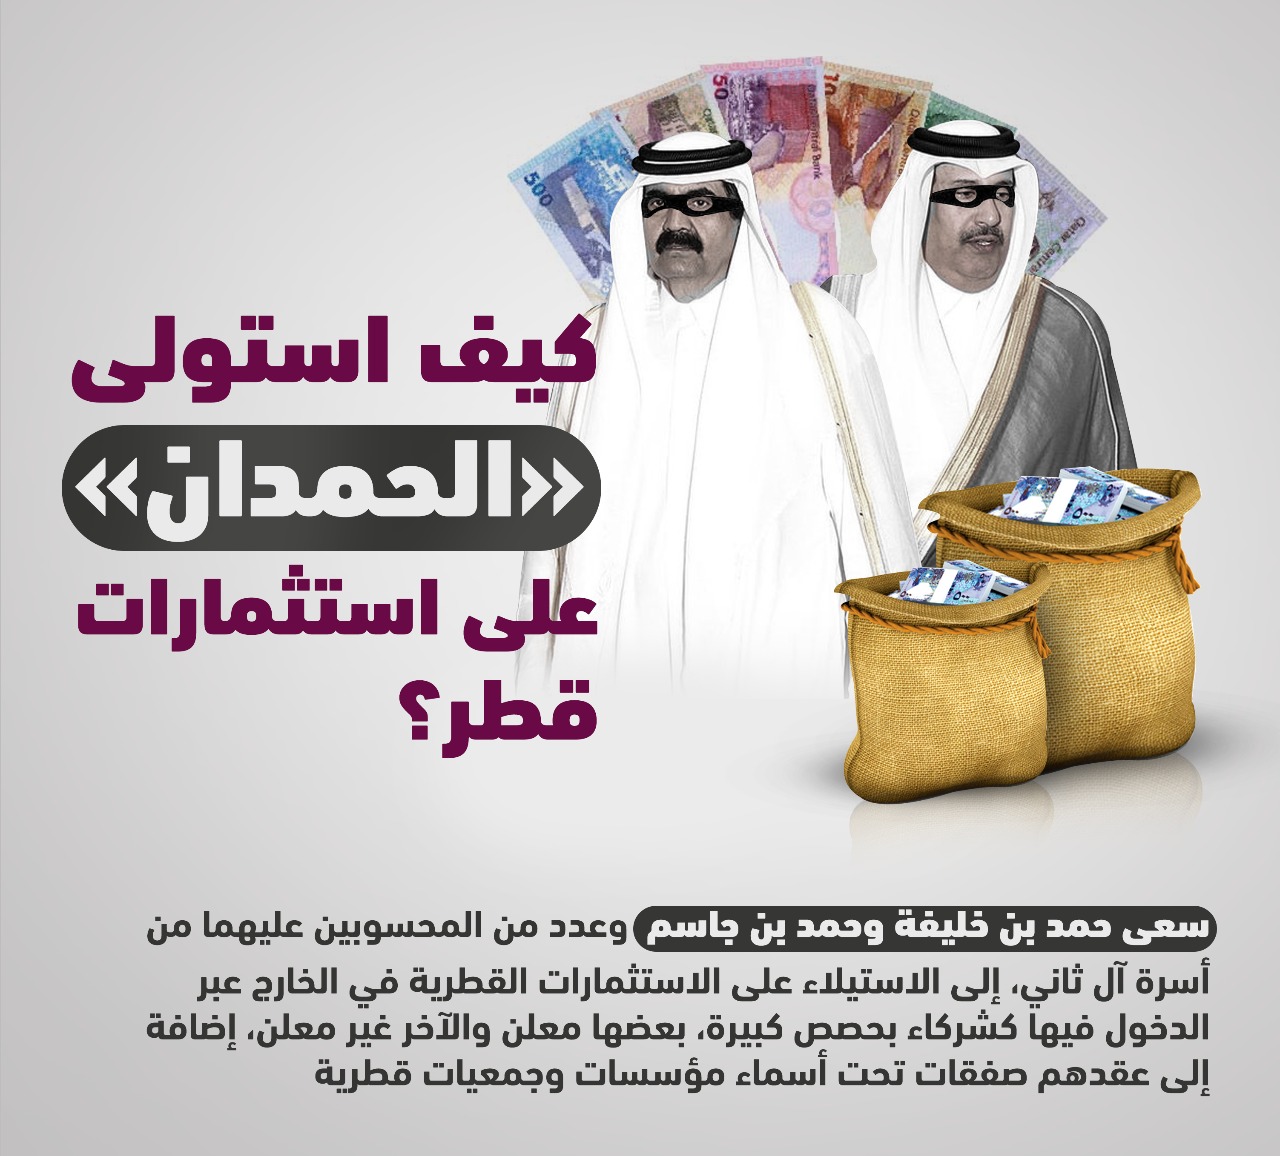 حمد بن خليفة وحمد بن جاسم ينهبون أموال الشعب القطرى